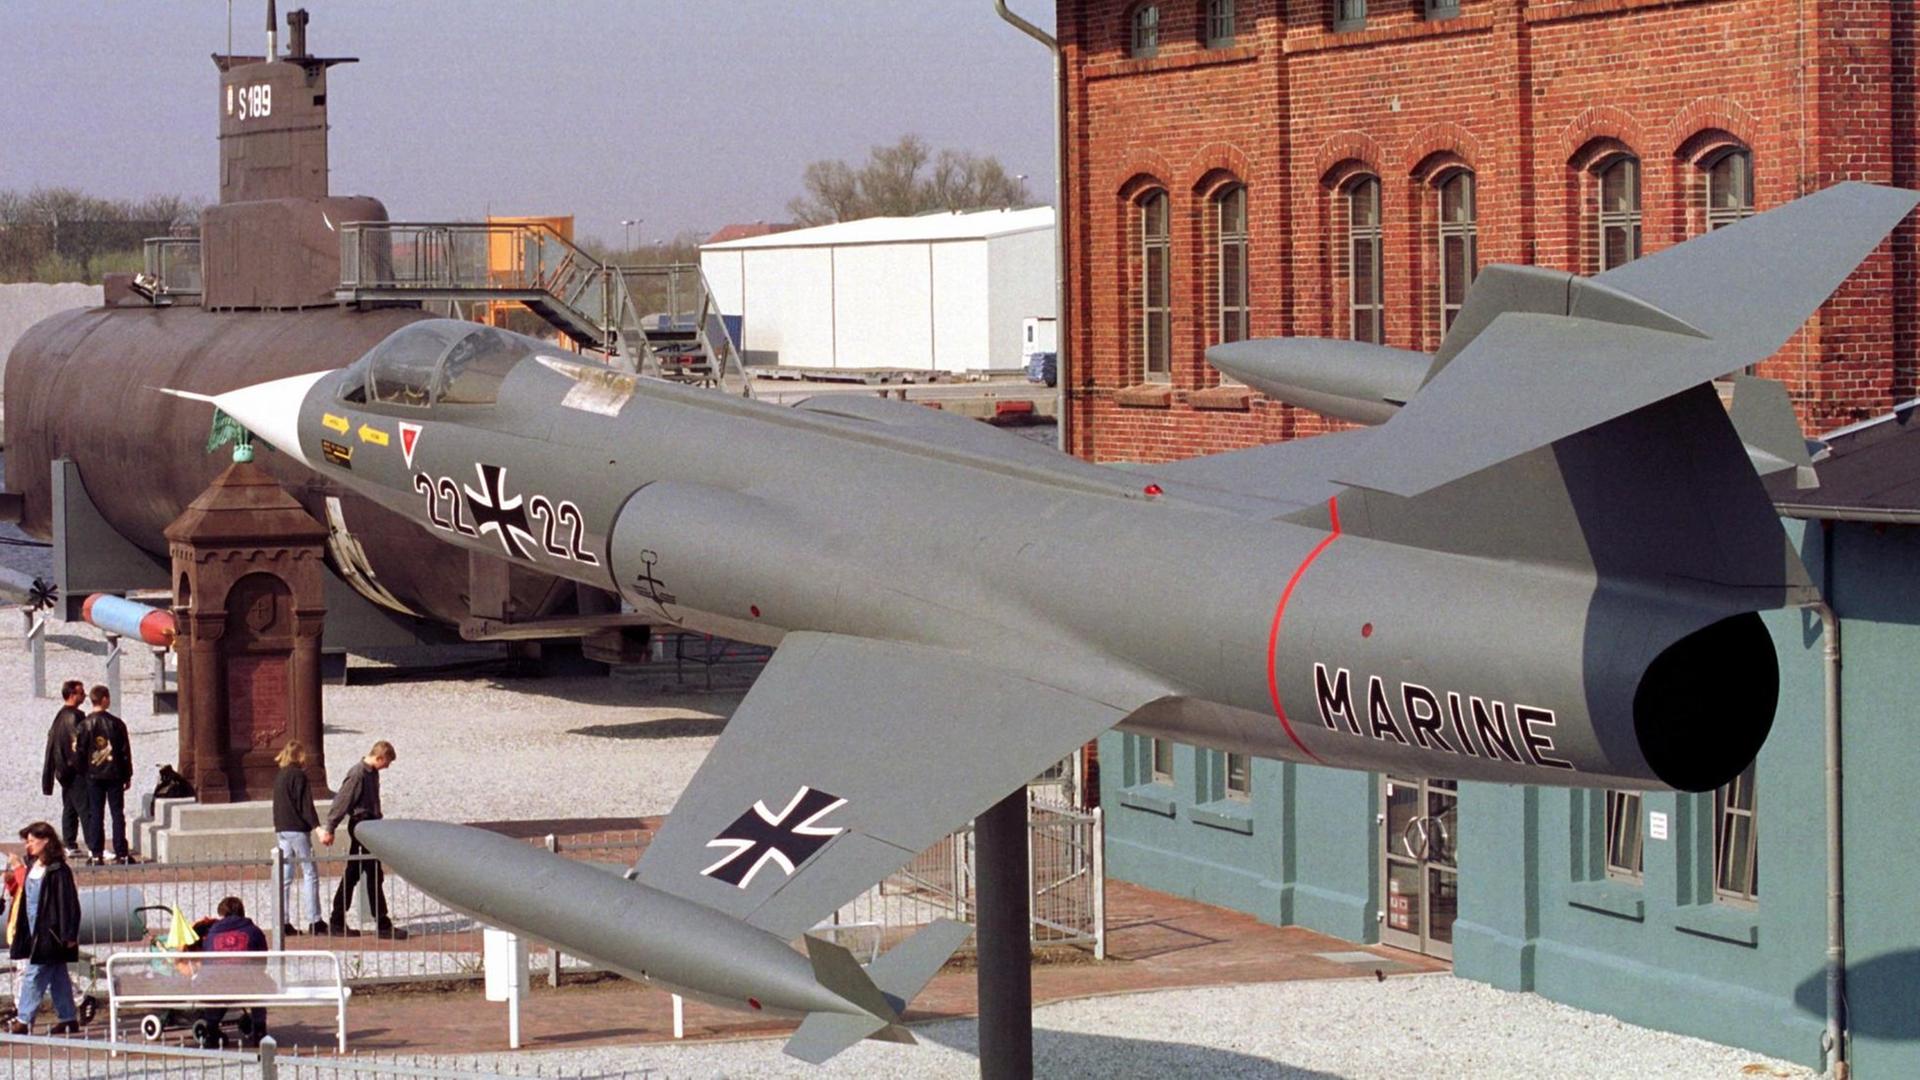 Auf einem eisernen Ständer schwebt der ehemalige Marinejagdbomber Lockheed F-104G "Starfighter" über dem Eingangsbereich des Marinemuseums in Wilhelmshaven.